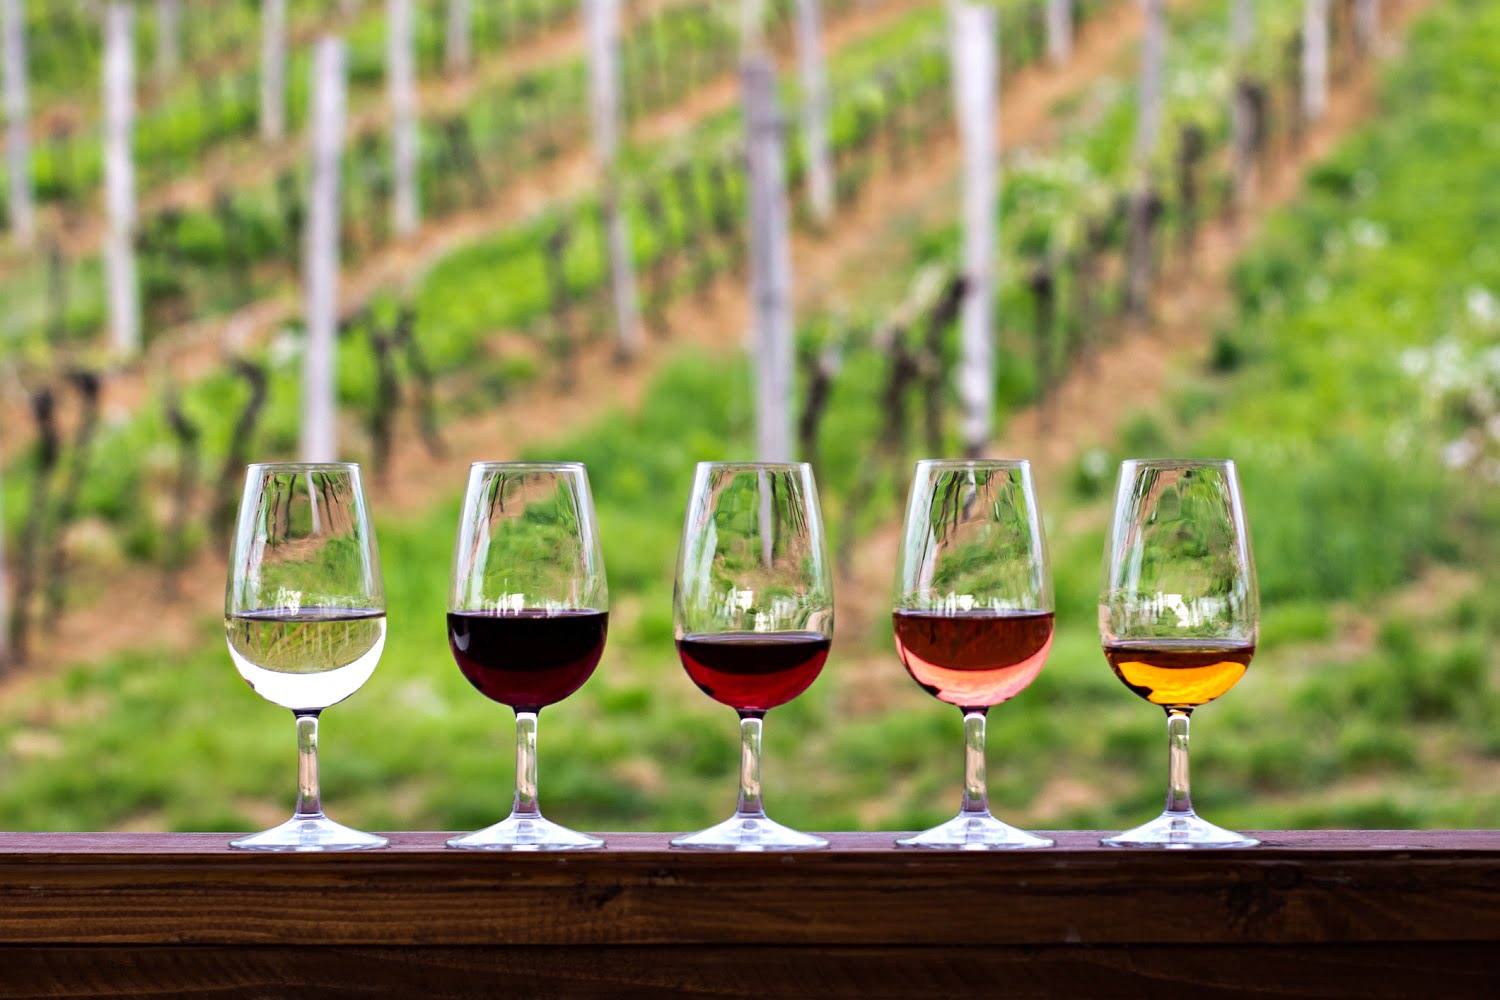 와인 테이스팅 세가지 기본 요소